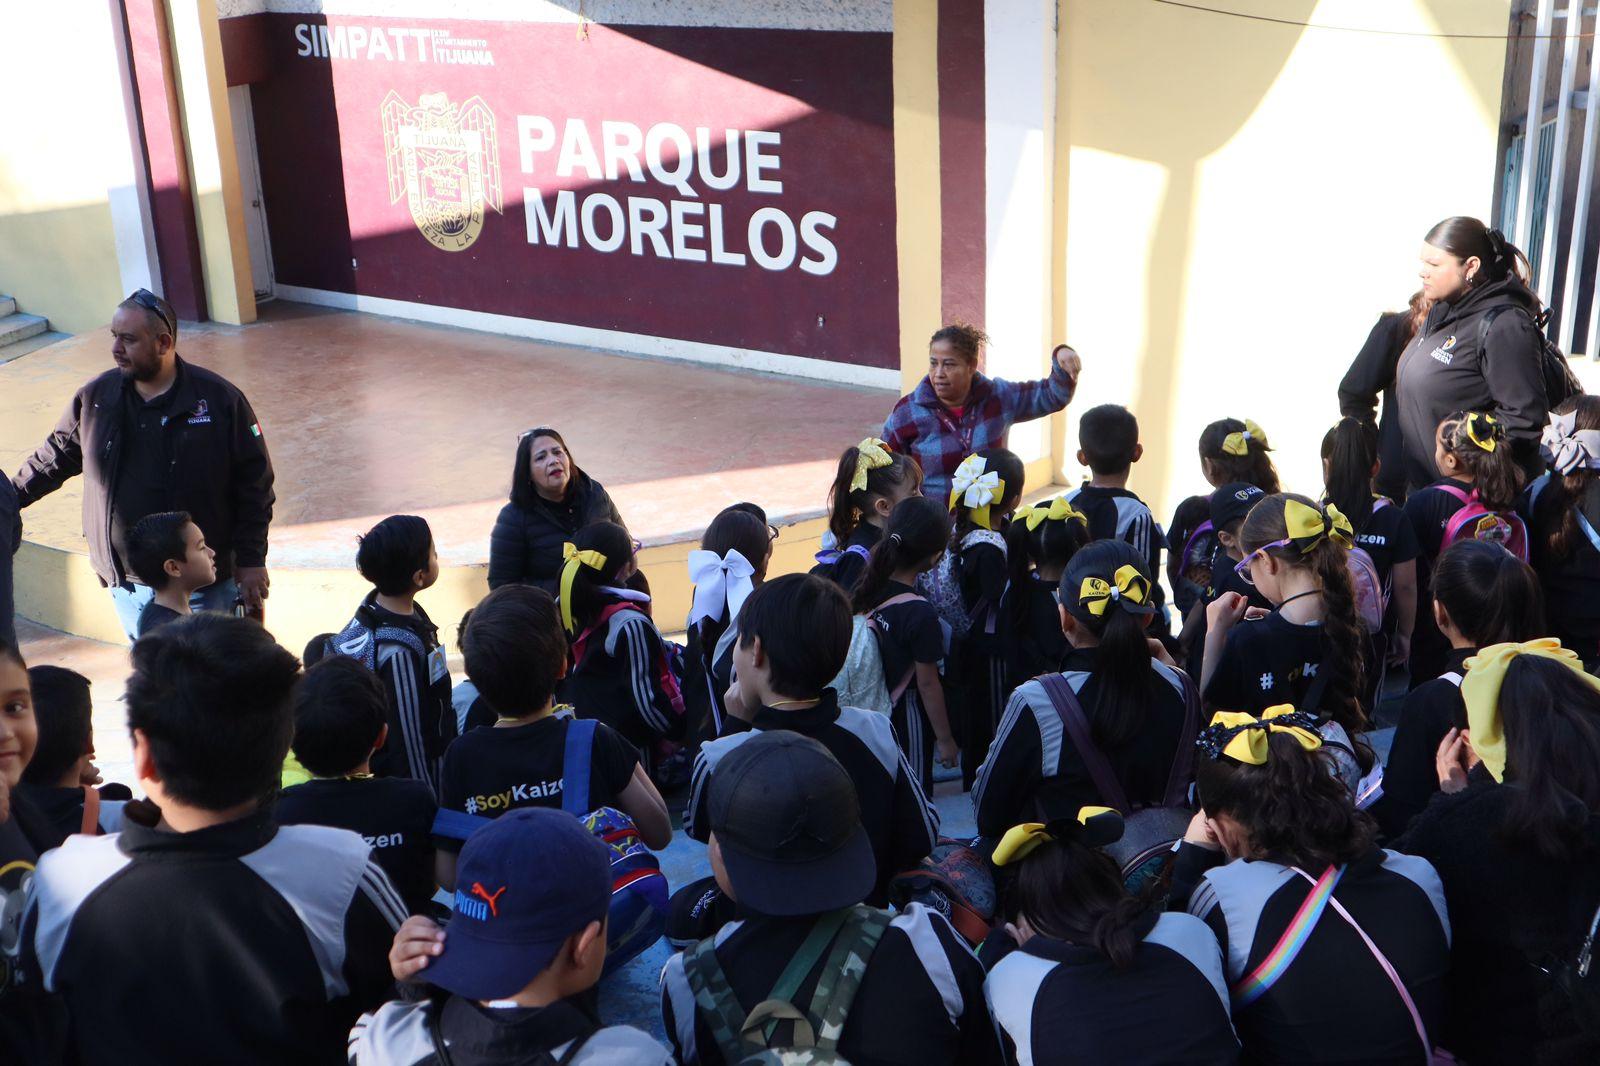 Ofrece SIMPATT recorridos temáticos en el Parque Morelos